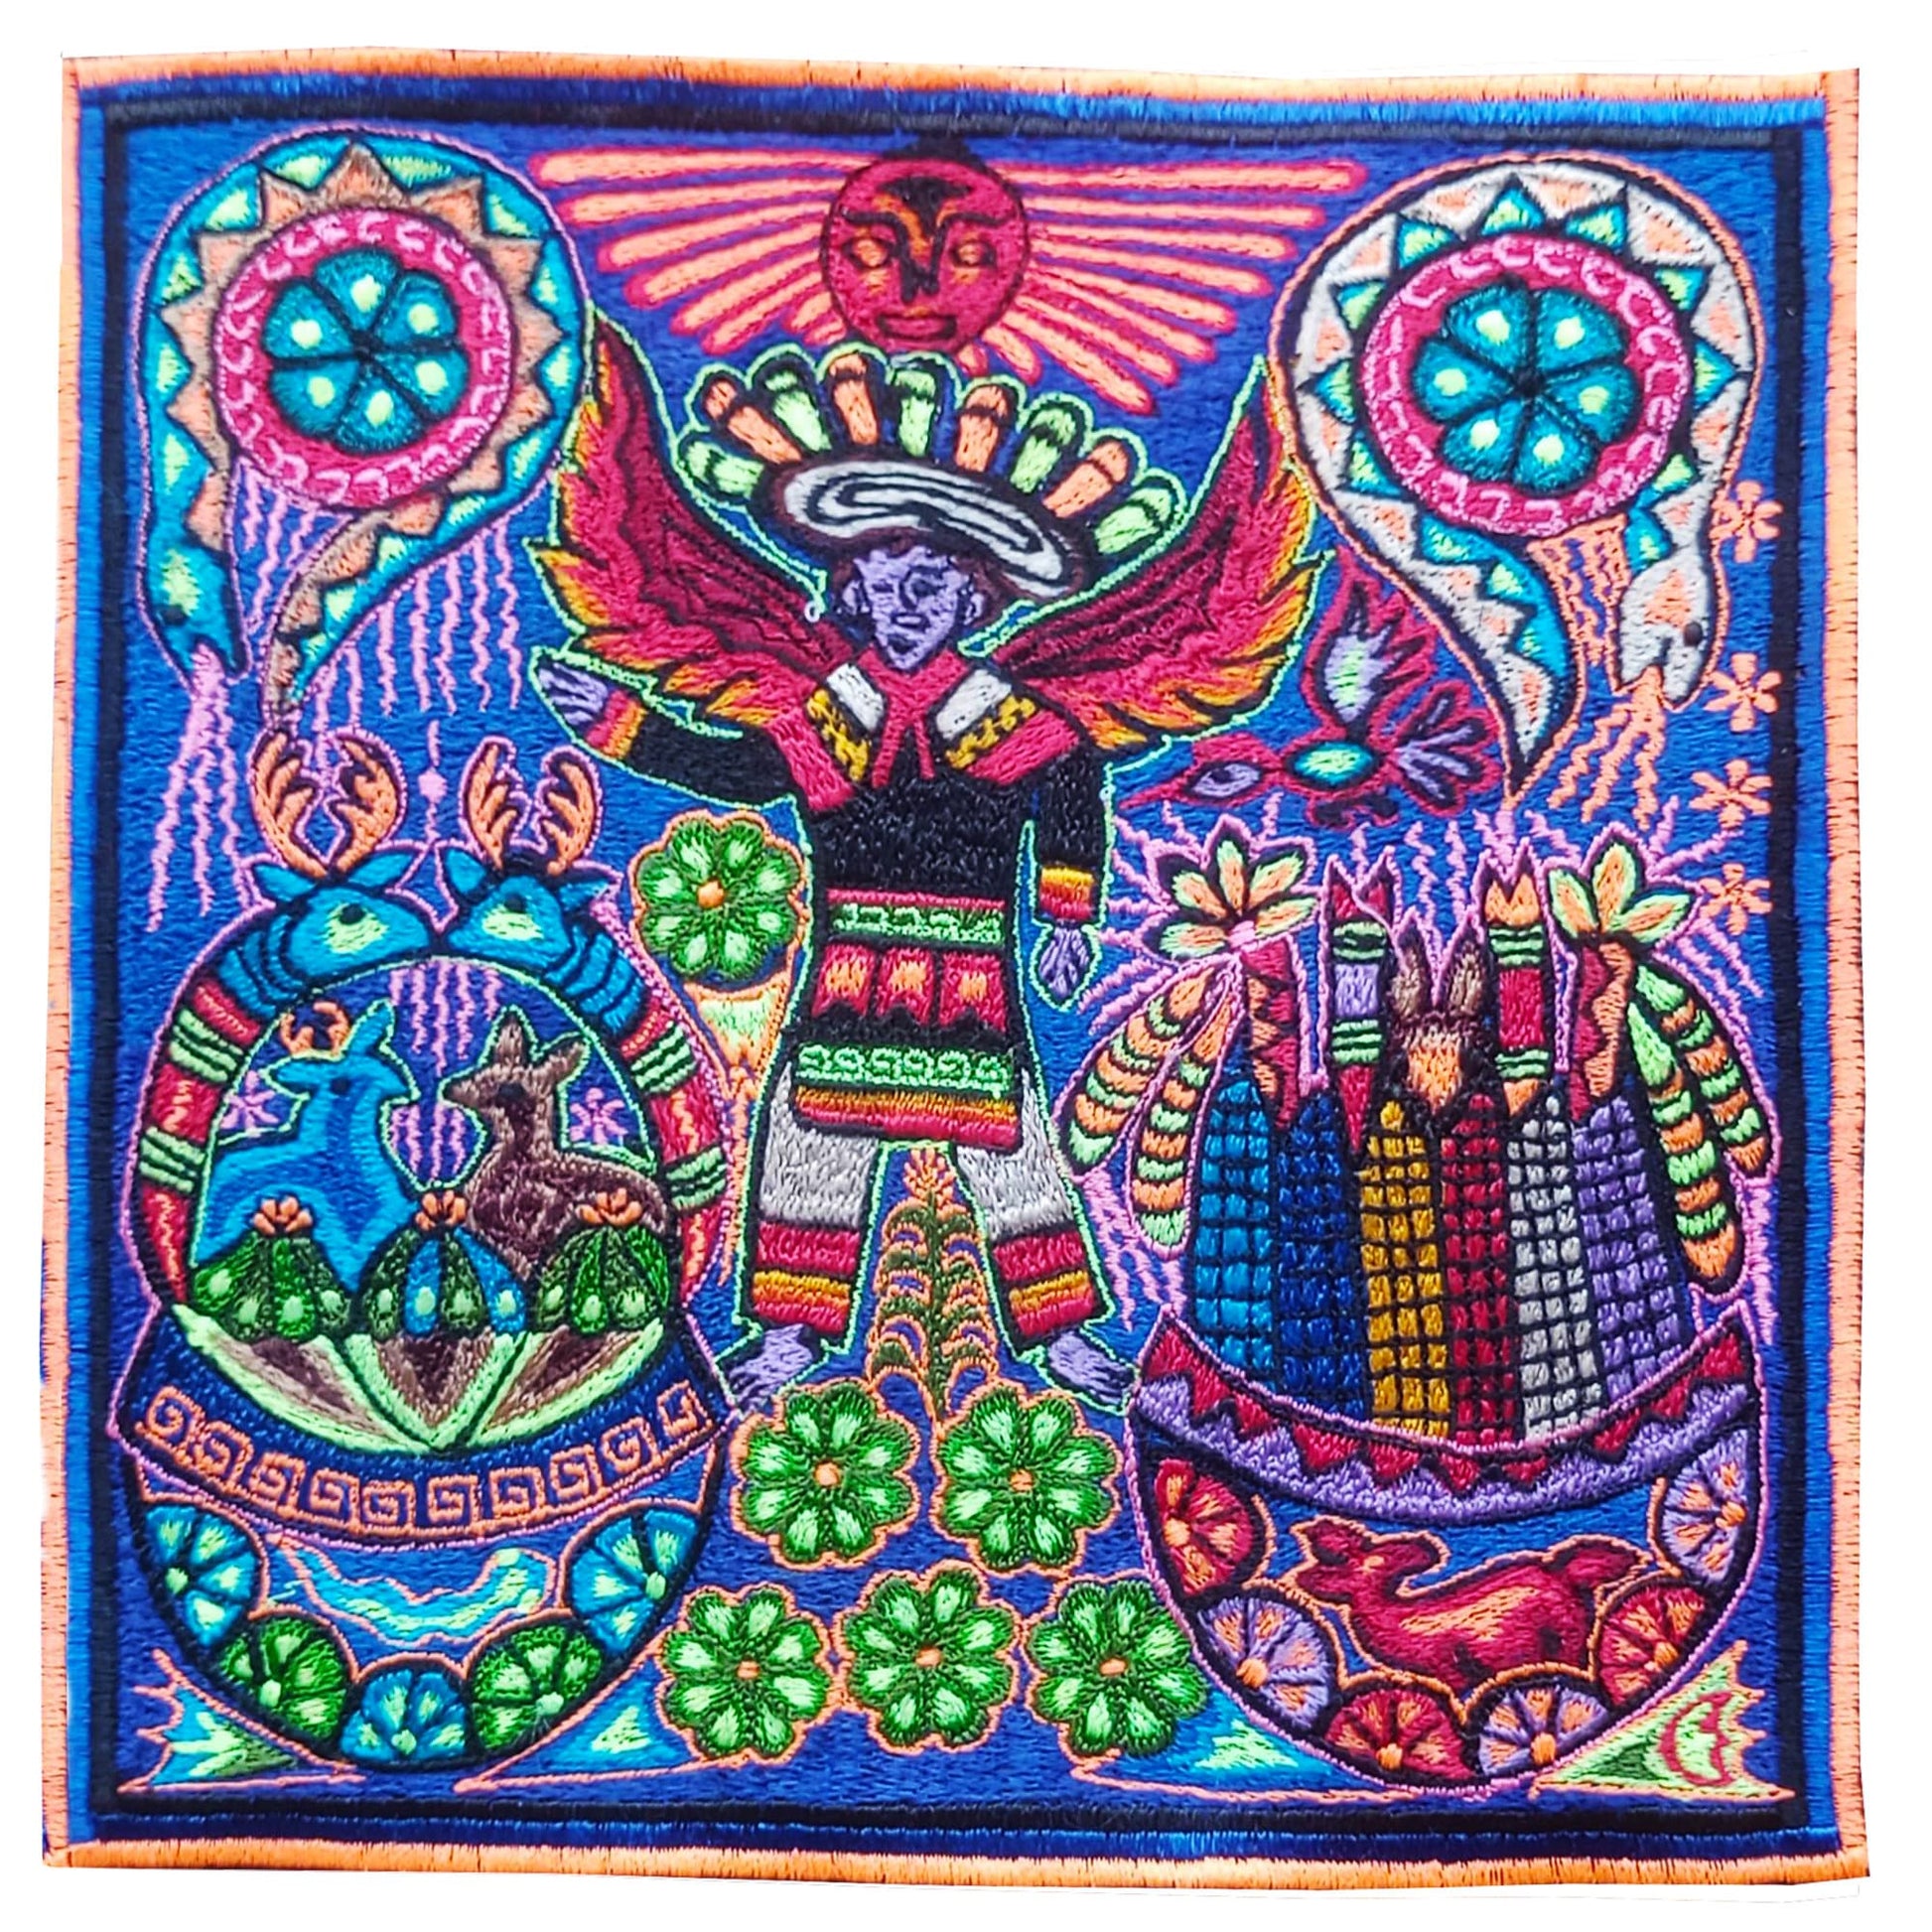 Huichol Shaman embroidery art magic cactus ceremony artwork mescaline blacklight glowing psychedelic indigene decoration UV active shining